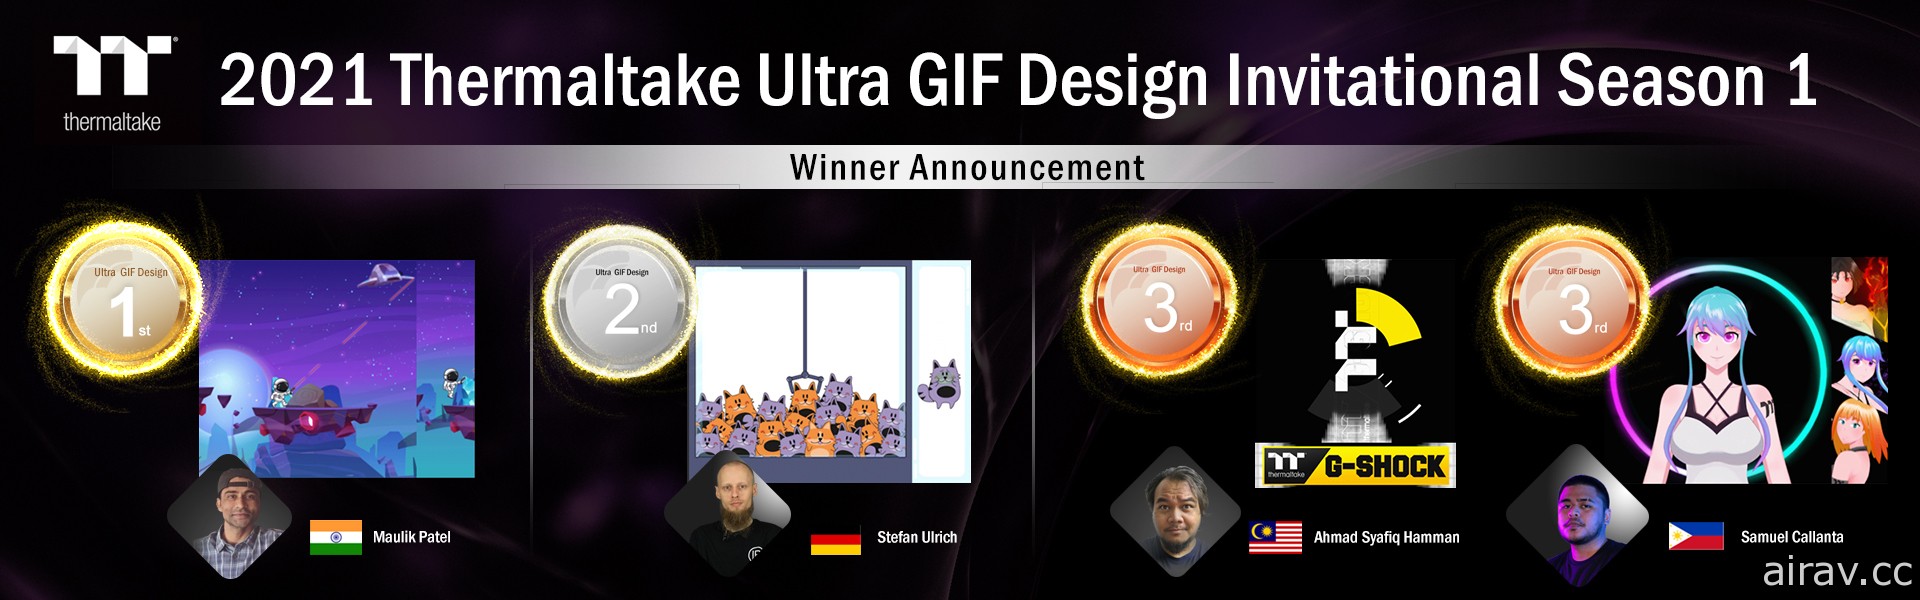 「2021 曜越 Ultra GIF 設計邀請賽・第一季」公布前三名 印度選手奪冠